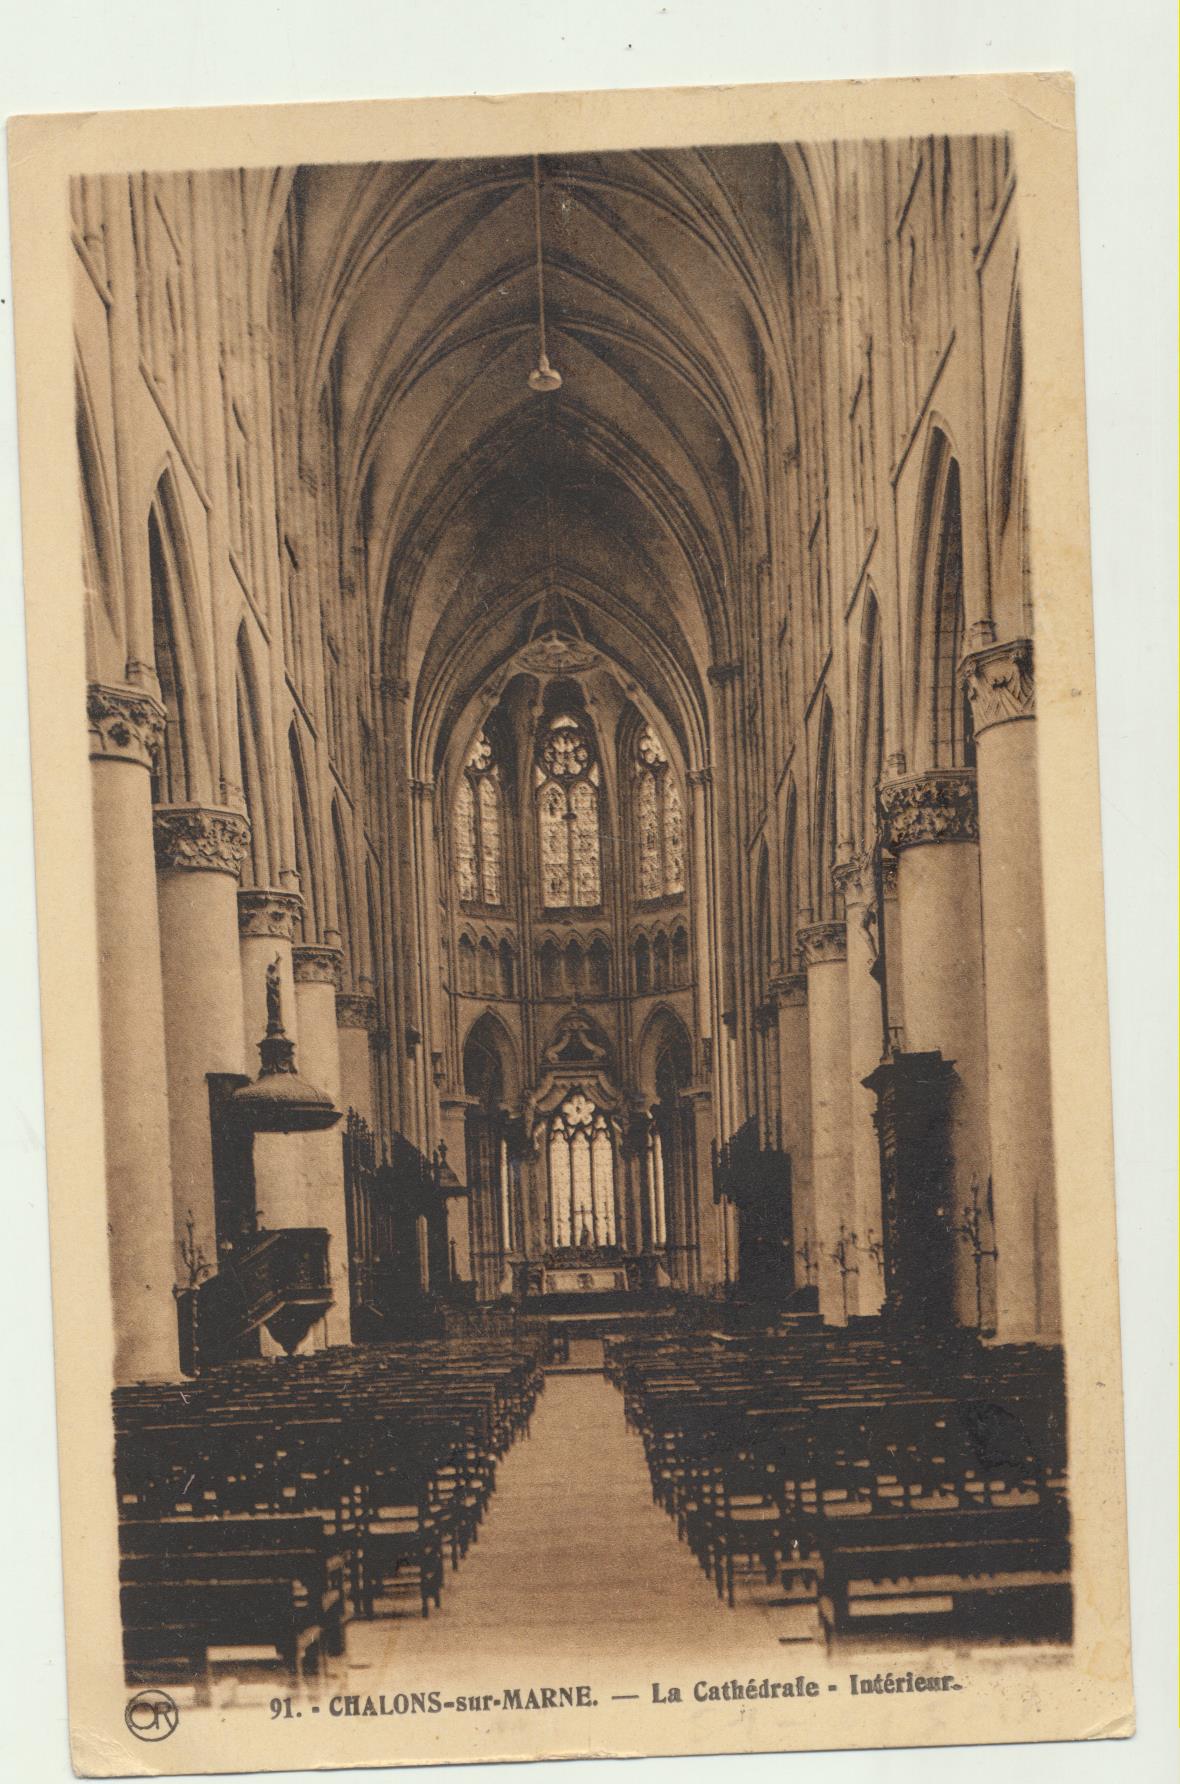 Chalons-sur-Marne. La Cathedrale-Interieur. Fechada en 1922